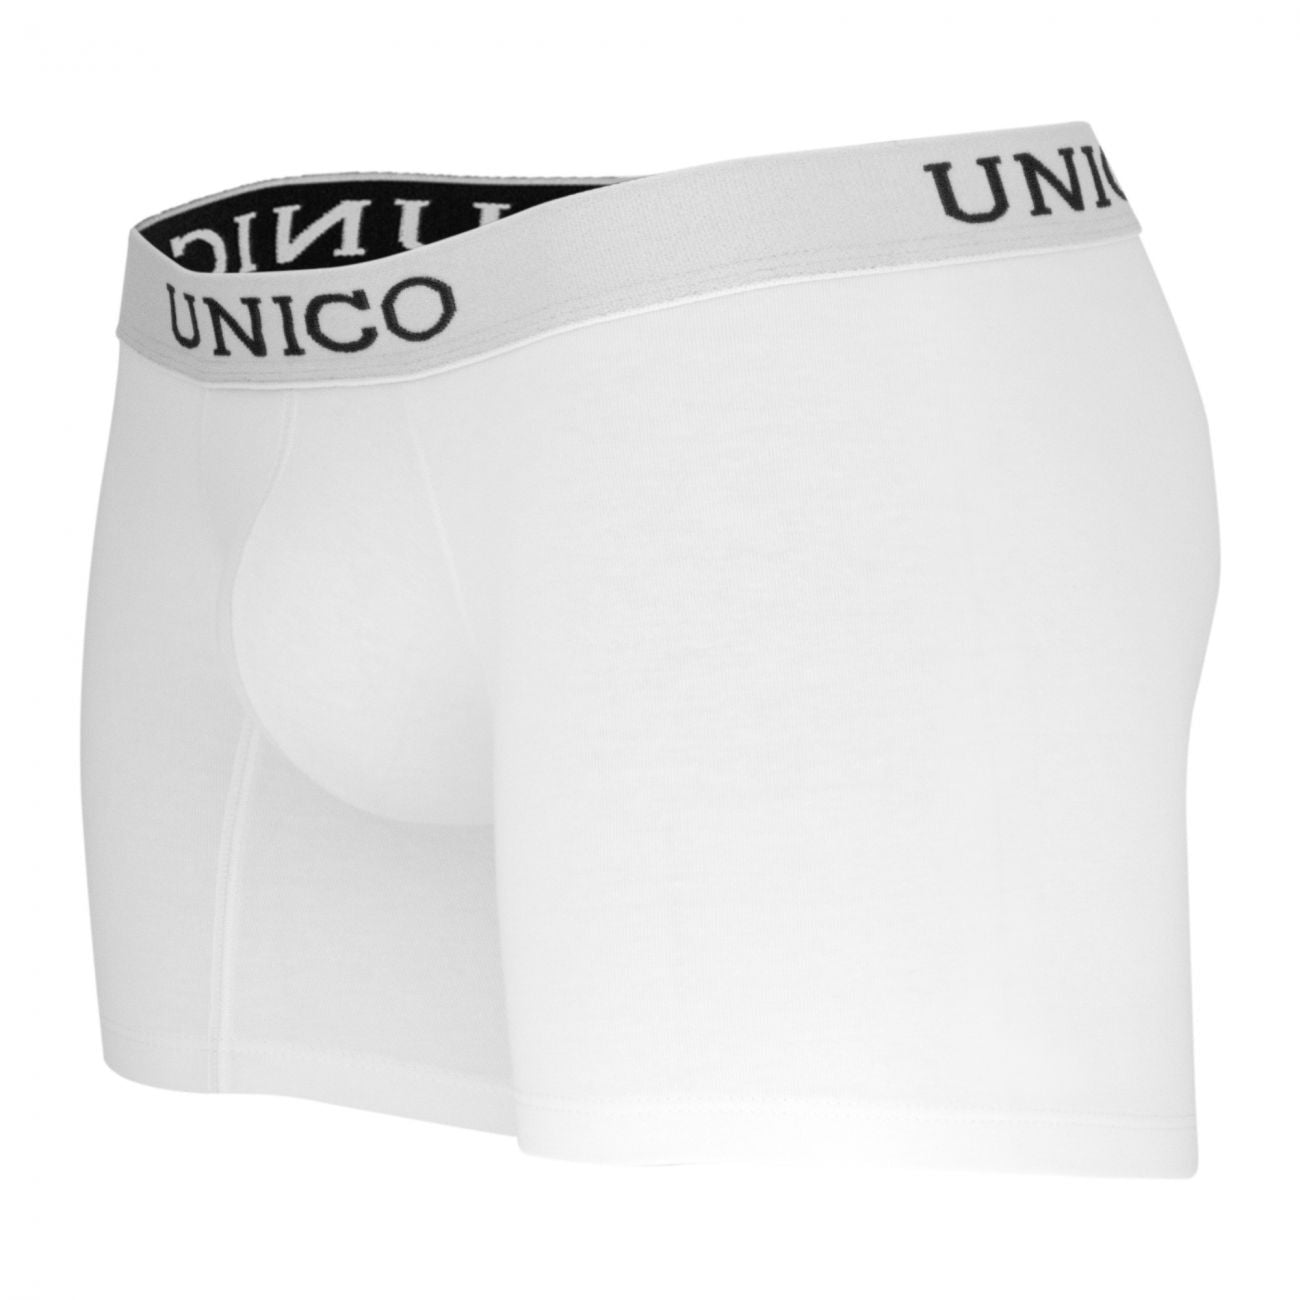 Unico 9610090100 Boxer Briefs Cristalino White